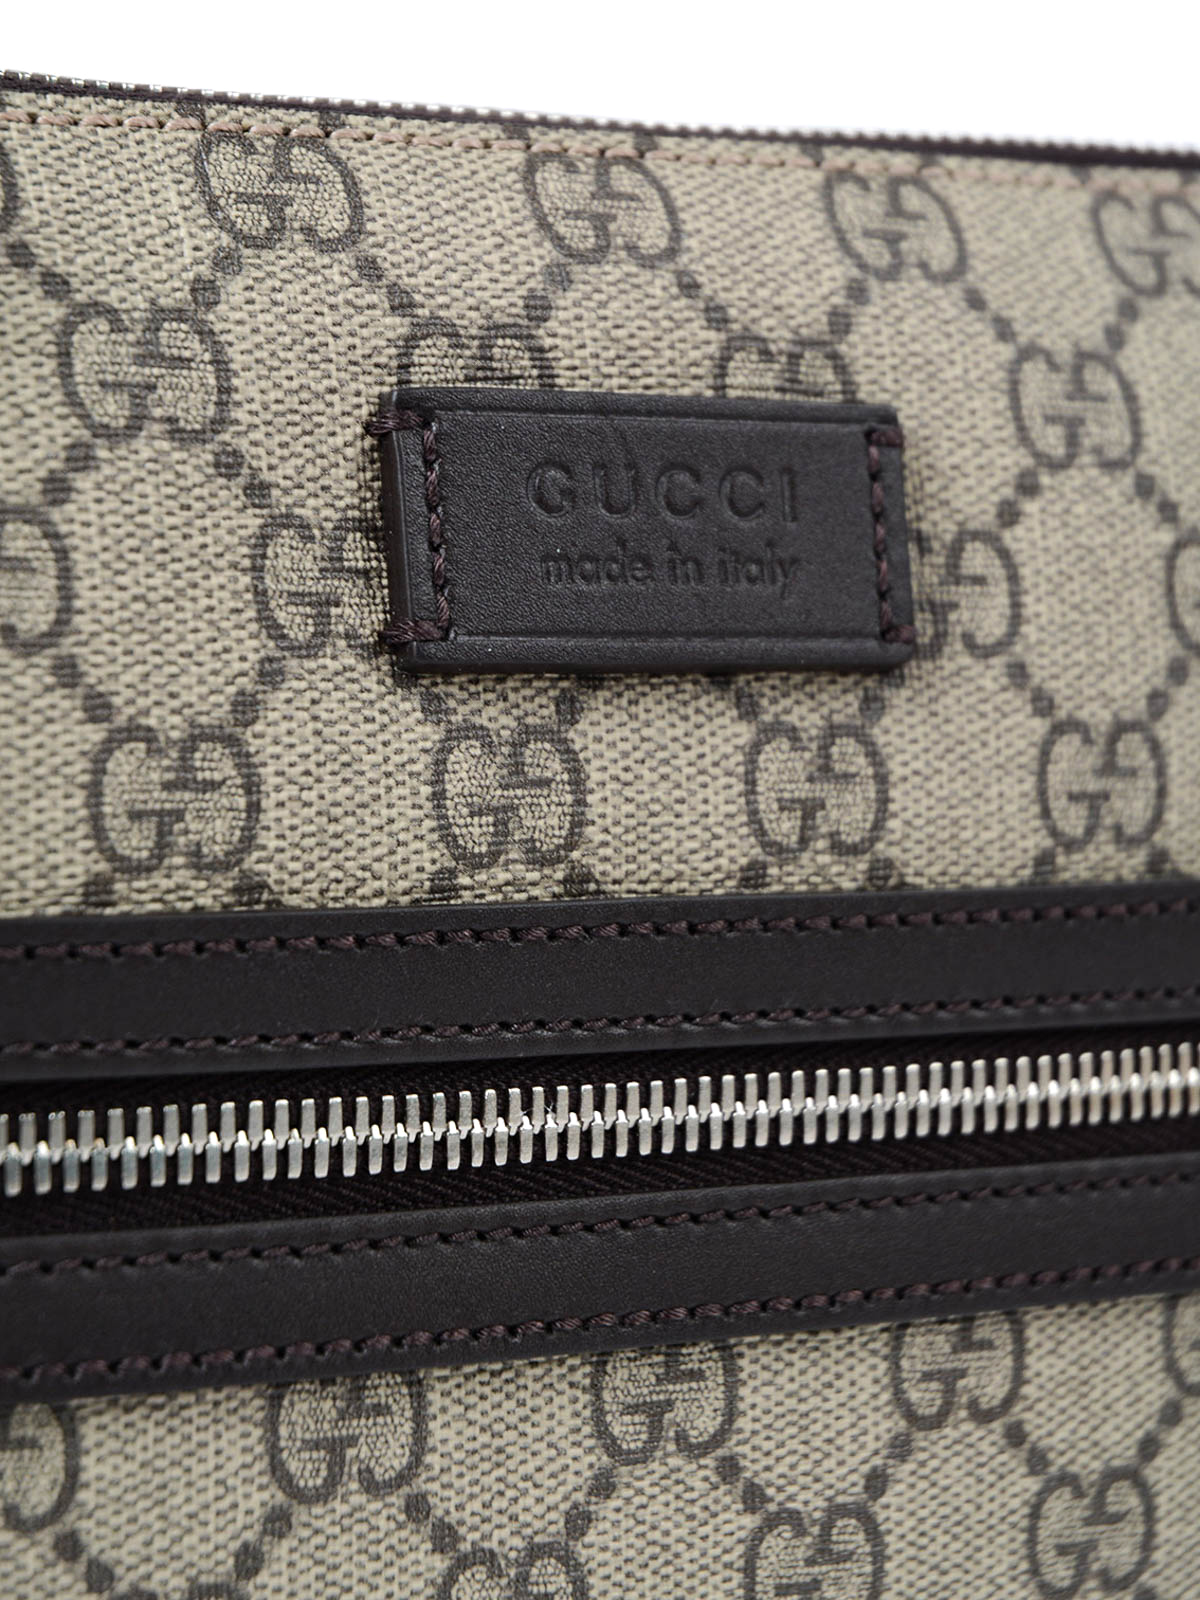 Gucci, Bags, Gucci Messenger Bag